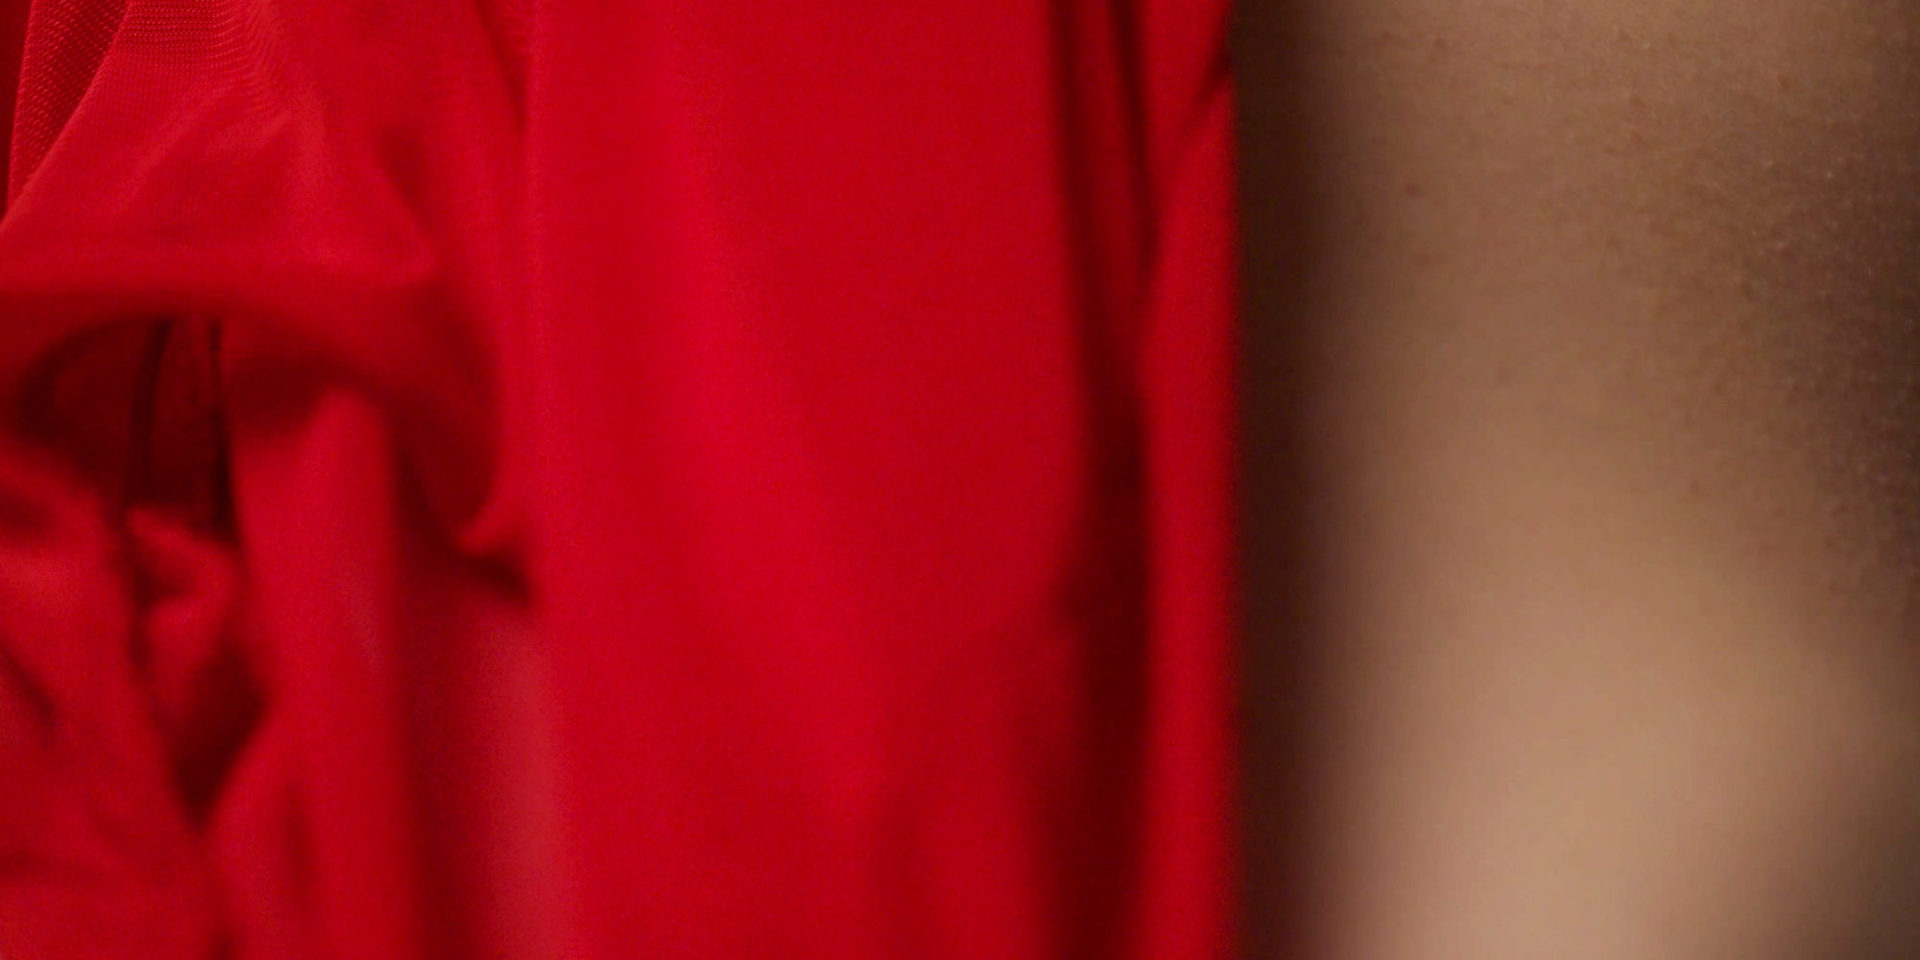 Zdjęcie macro 100mm, część czerwonej sukienki nocnej na kobiecej skórze z ciarkami